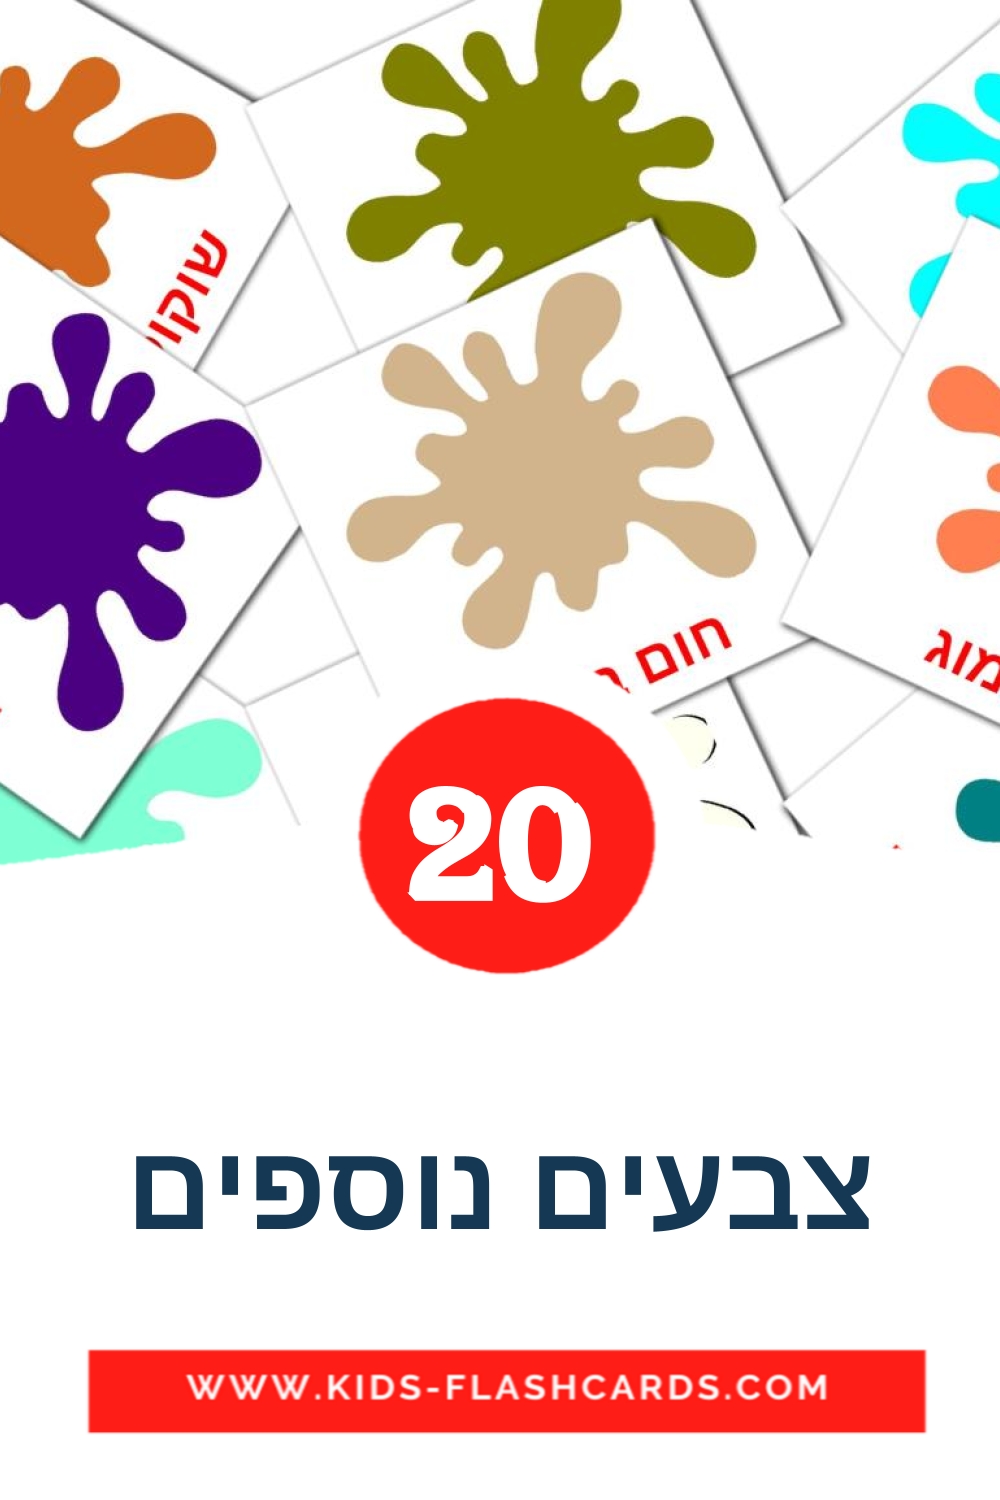 20 Cartões com Imagens de צבעים נוספים para Jardim de Infância em hebraico